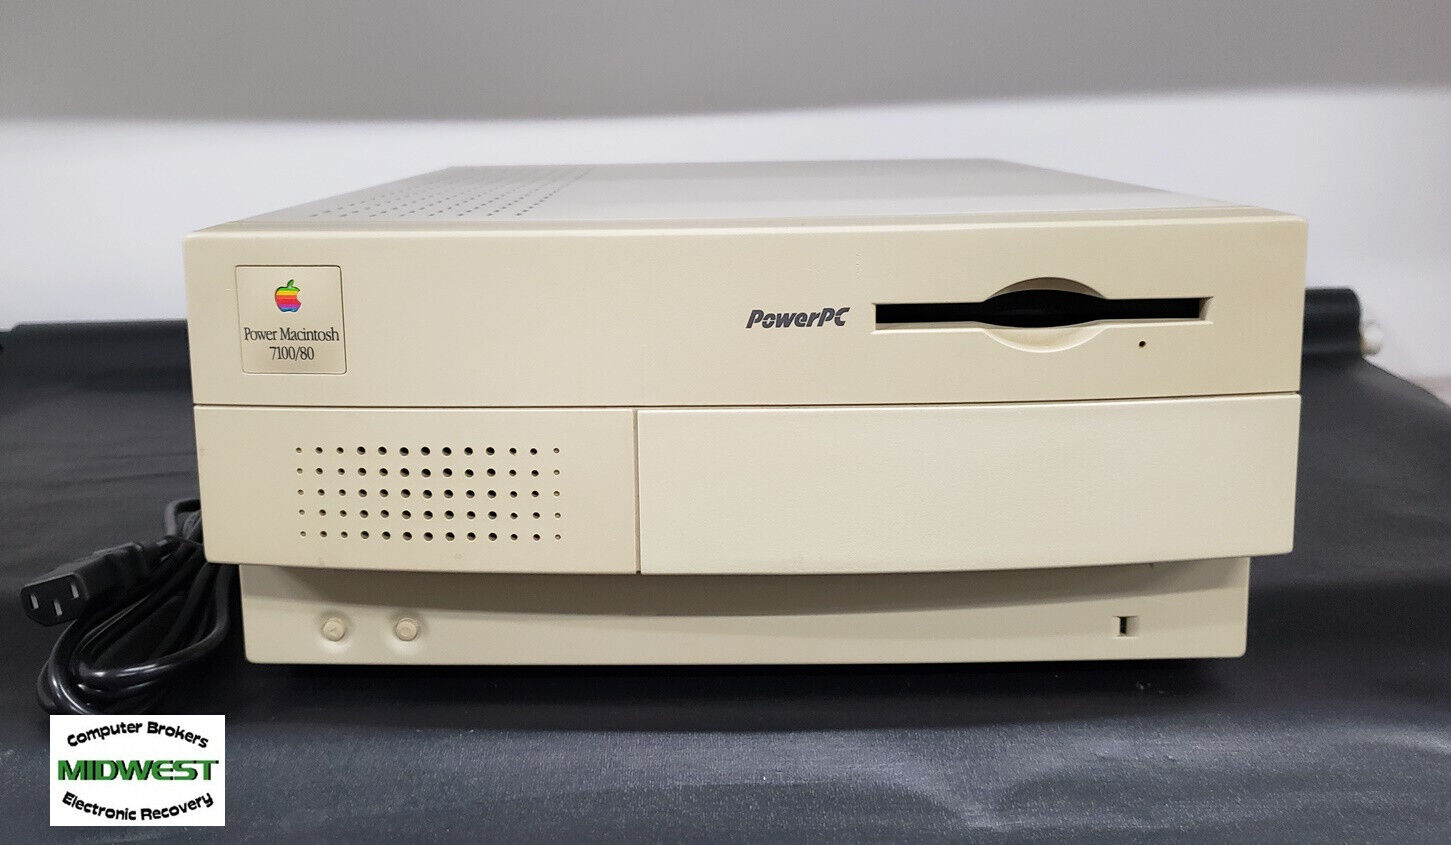 Vintage Apple Power Macintosh 7100/80 M2391 PowerPC System 7.6.1